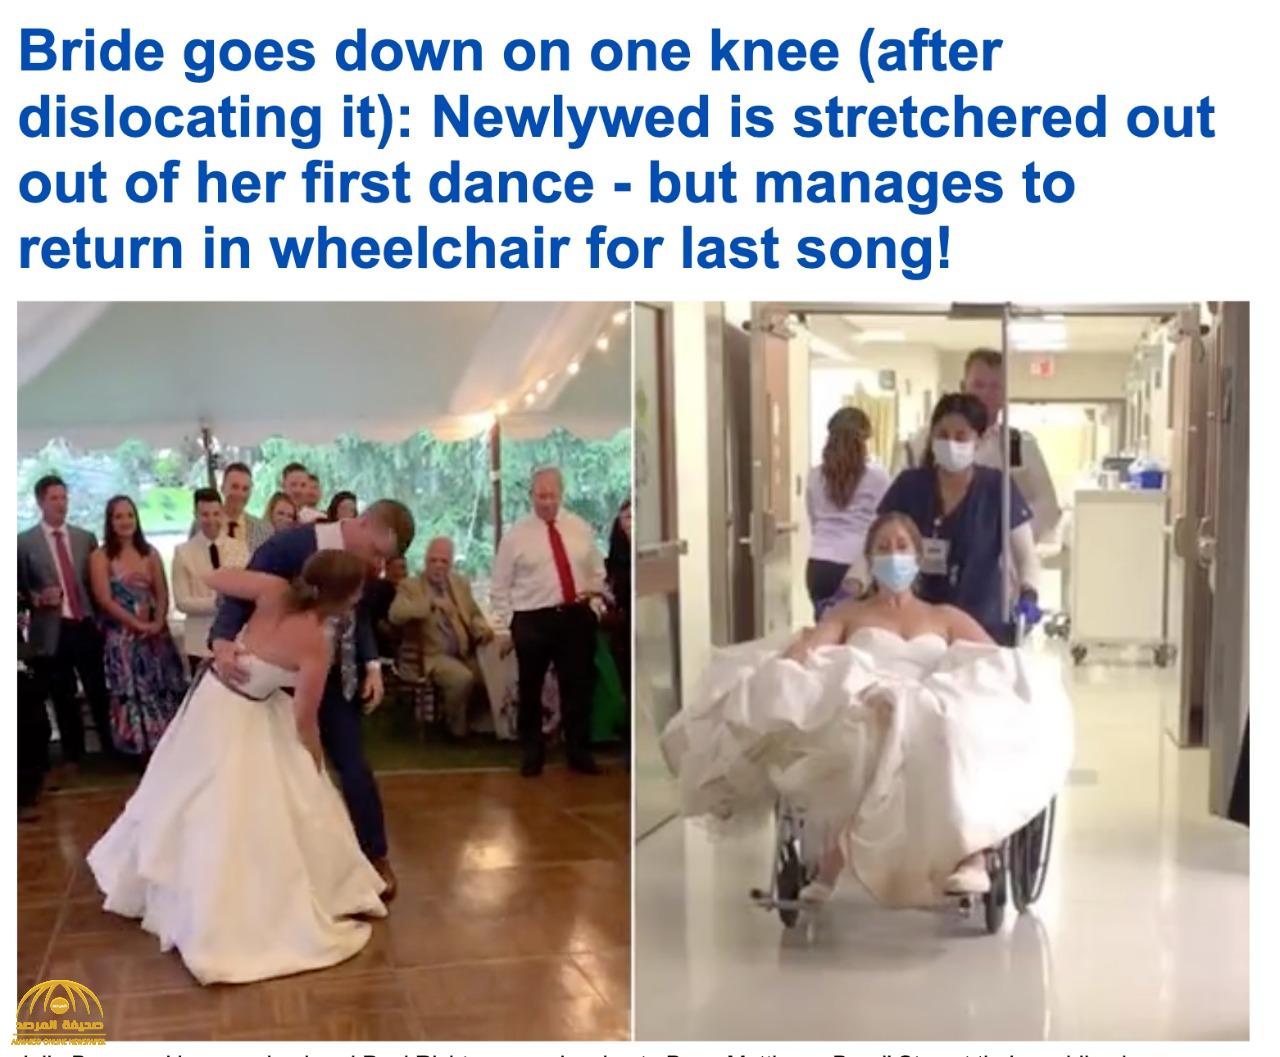 شاهد.. لحظة إصابة عروس بخلع في الركبة خلال رقصها مع زوجها يوم زفافها